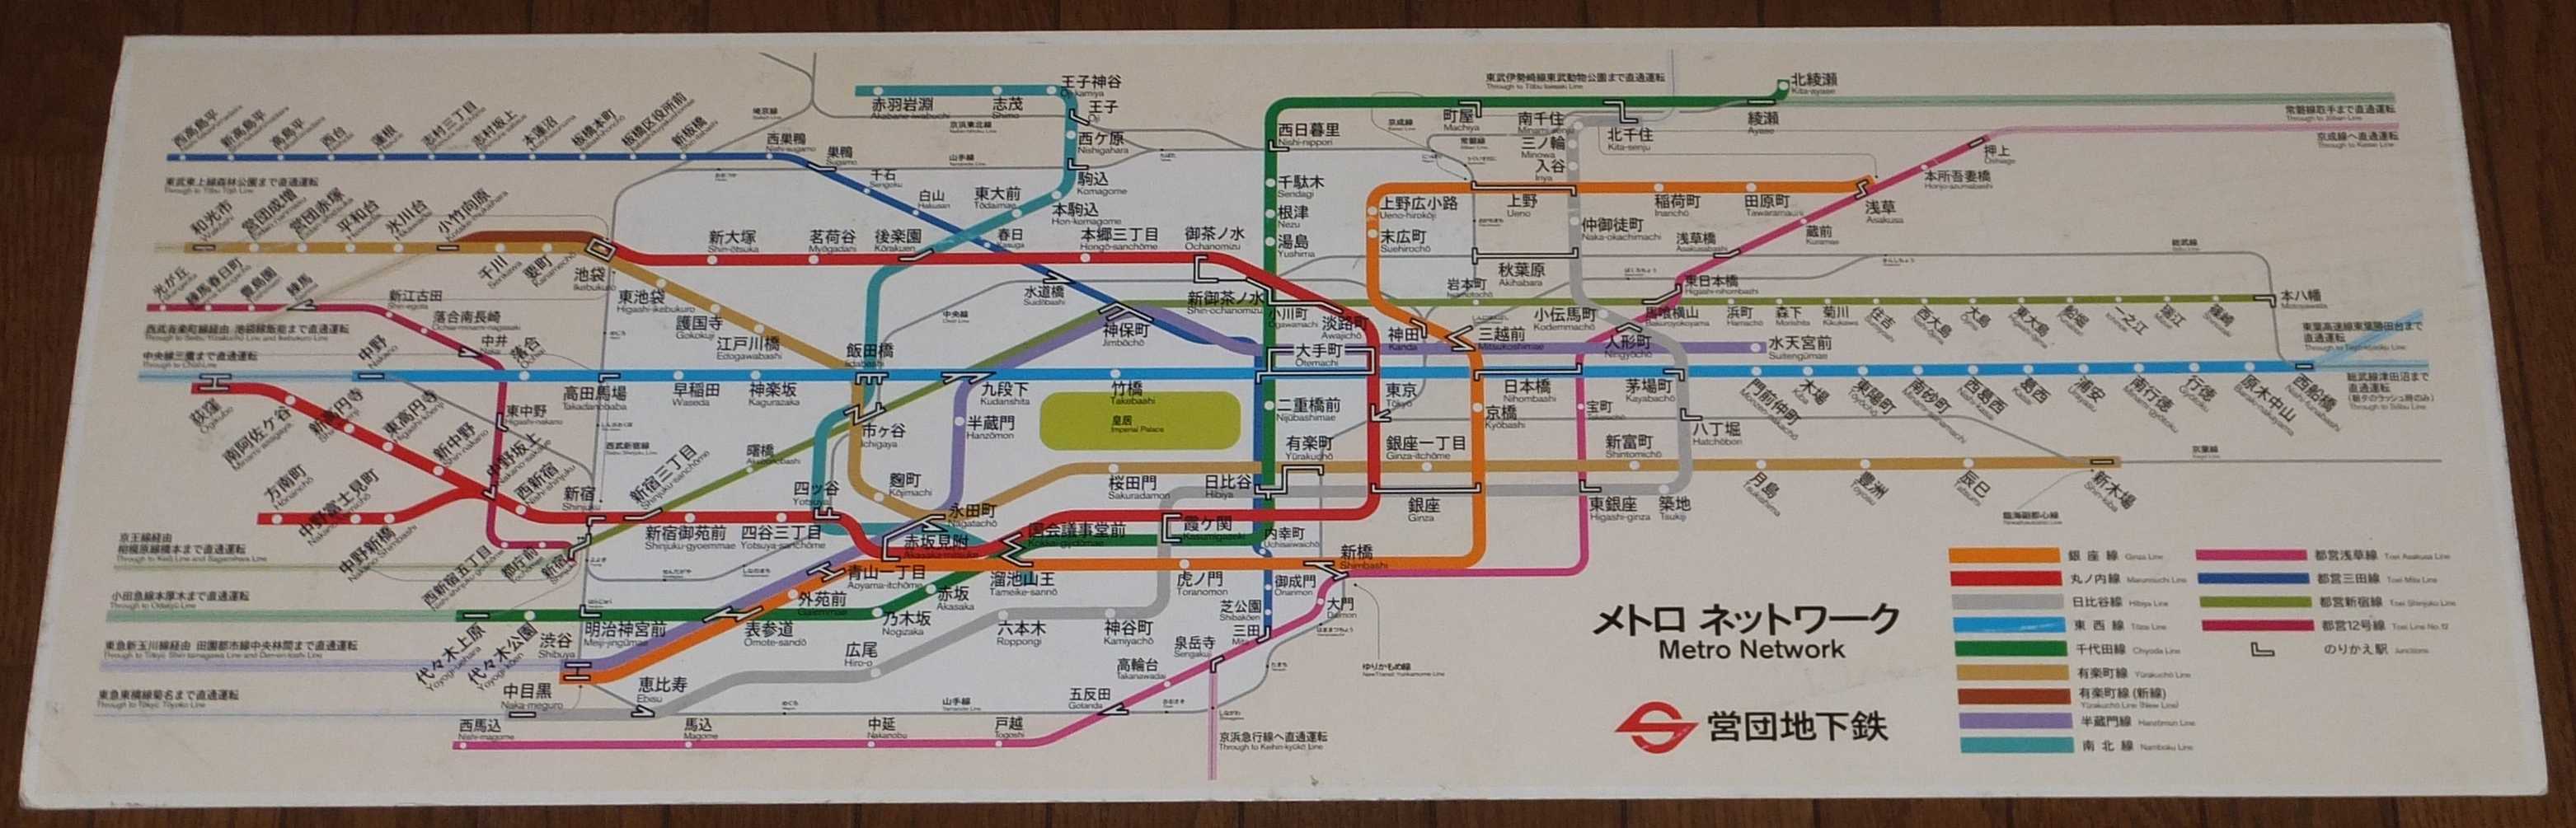 路線図の変遷 地下鉄全線路線図 営団地下鉄 東京地下鉄 都営地下鉄編 都営地下鉄 2019年6月14日追記 画像追加 Icoca飼いました